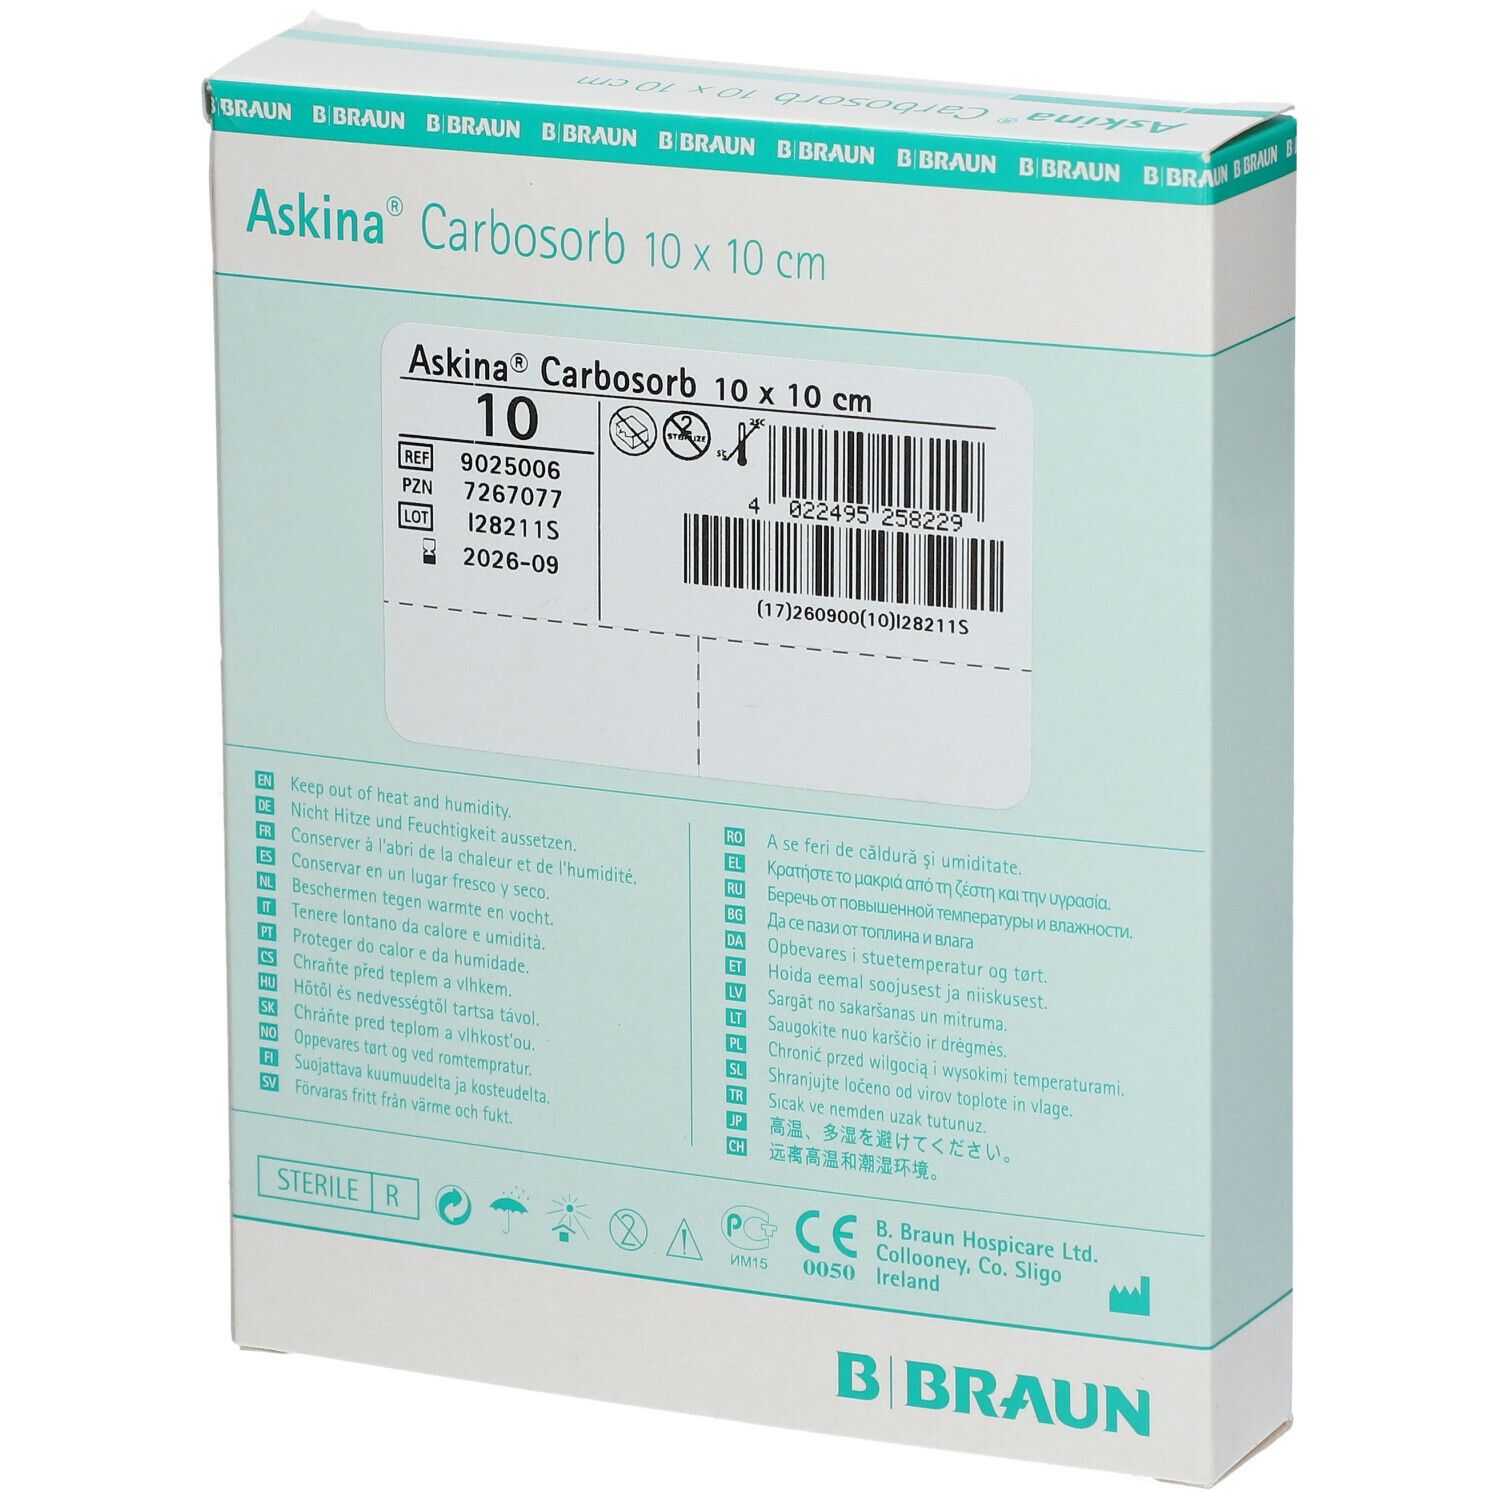 Askina® Carbosorb 10 x 10 cm steril